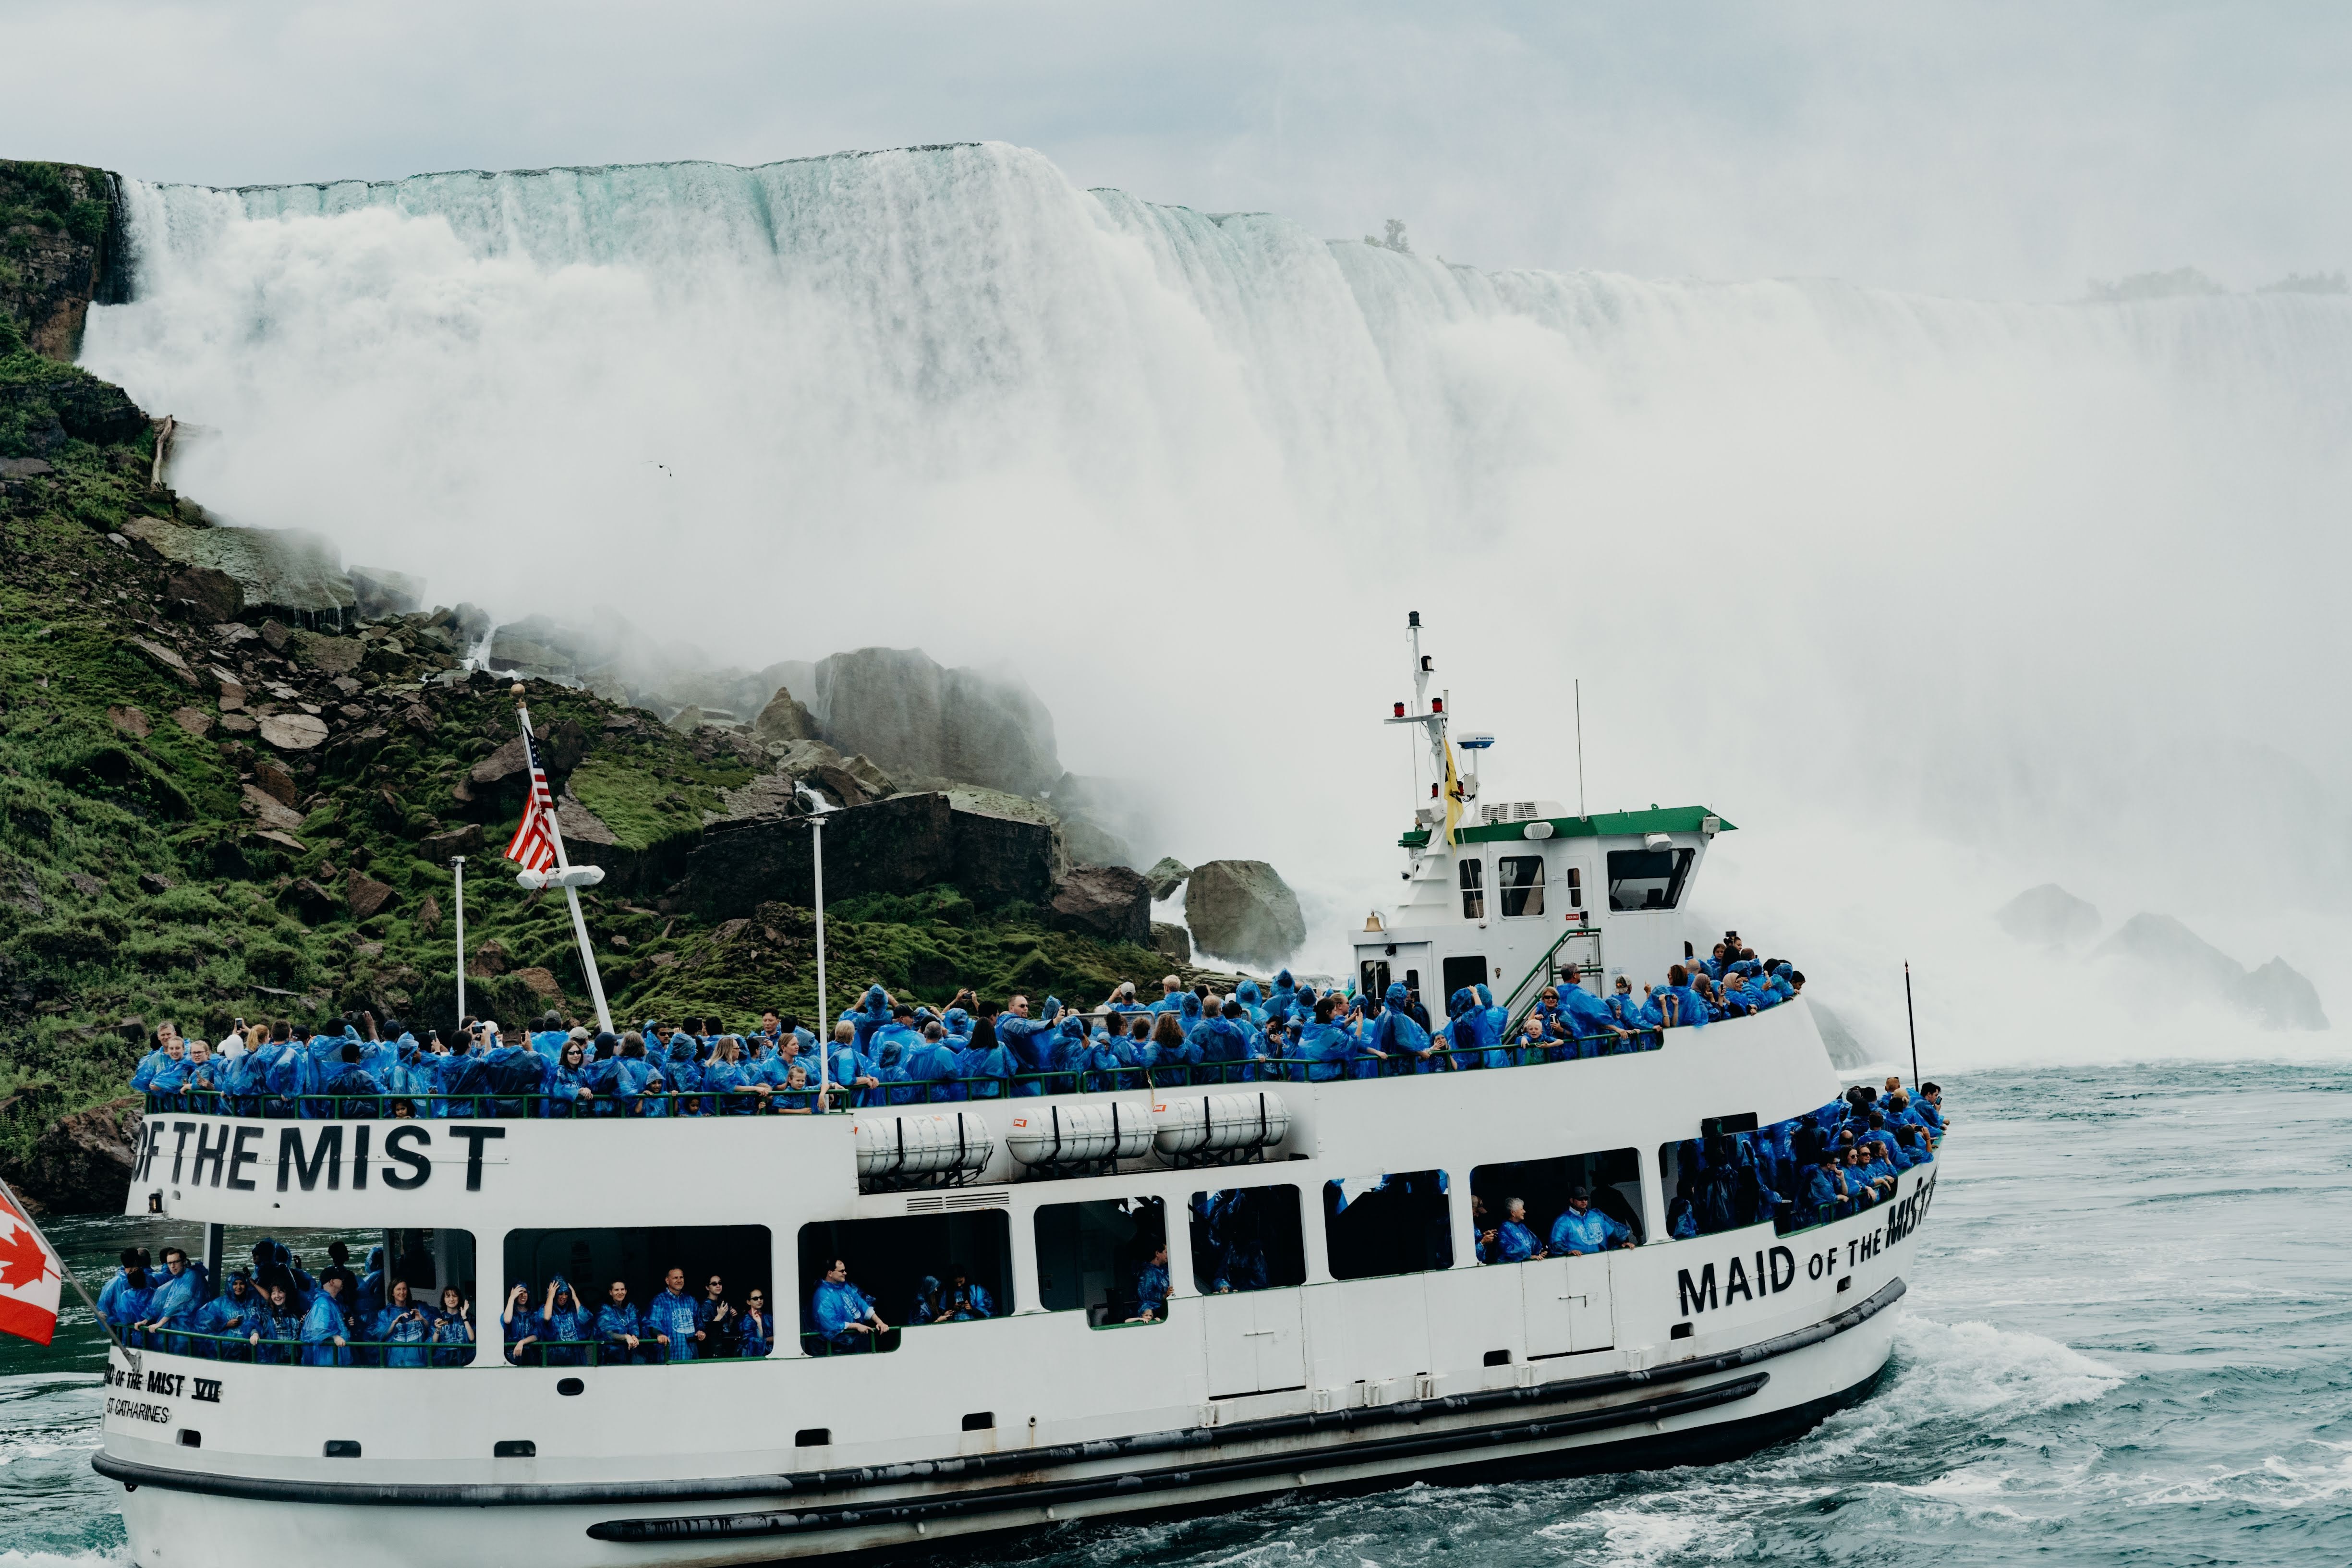 So, why visit Niagara Falls?